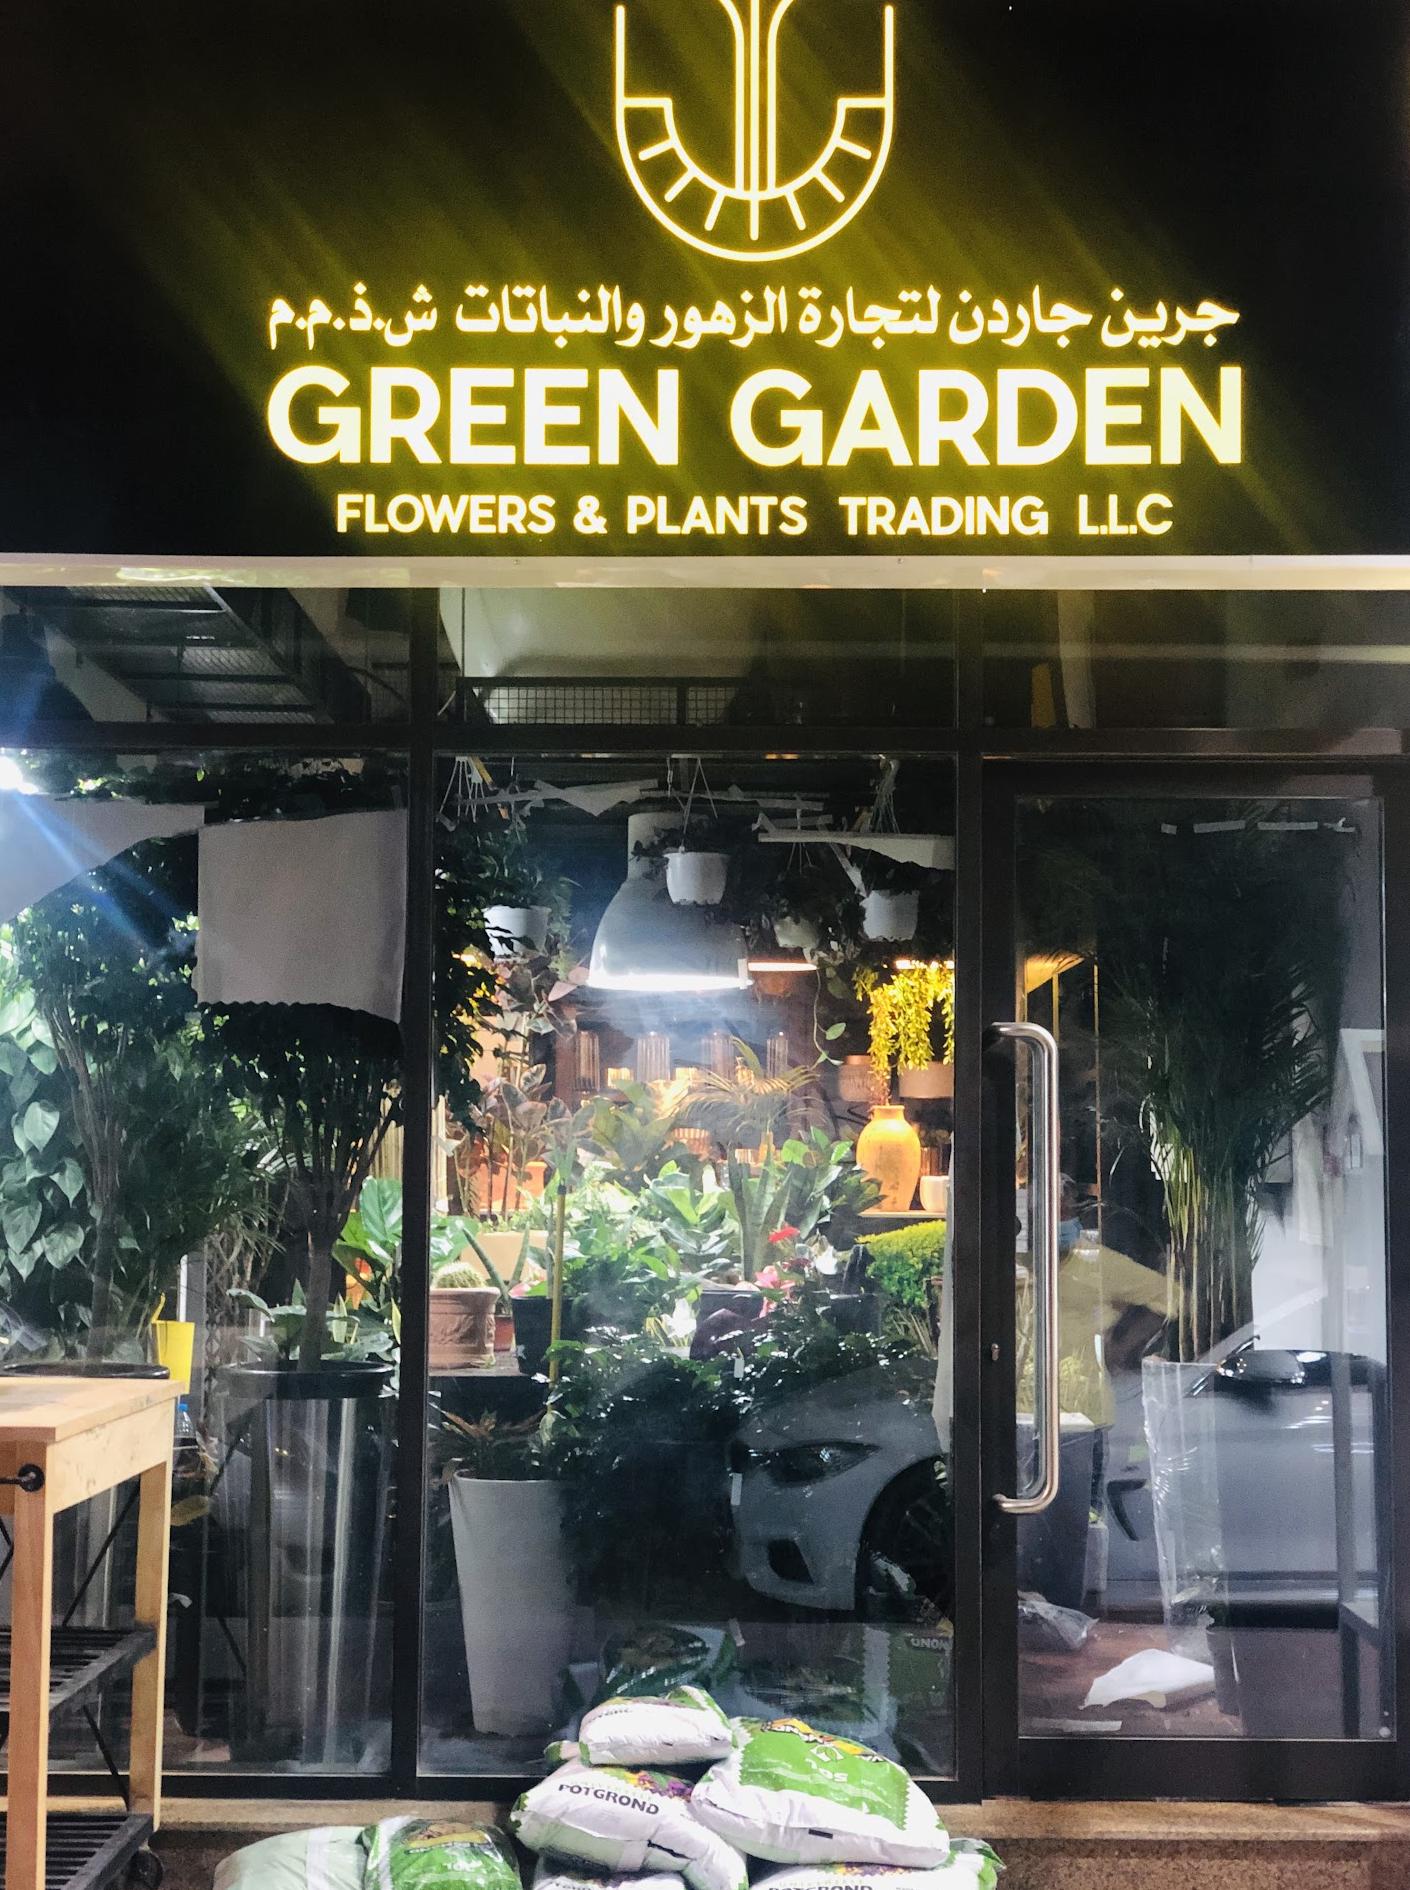 Handel mit grünen Gartenblumen und -pflanzen